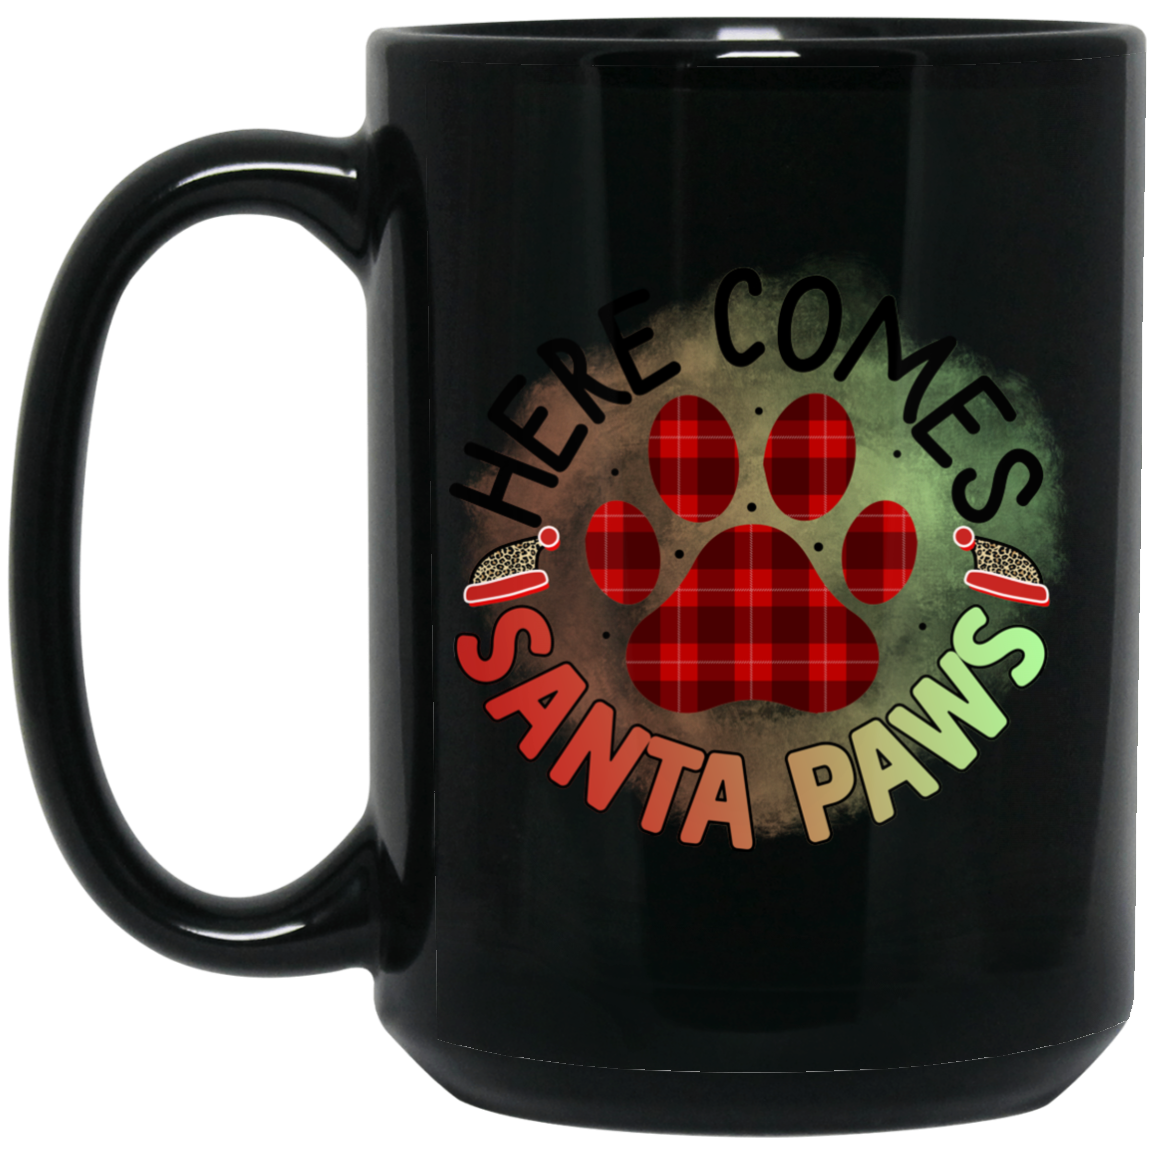 Here Comes Santa Paws Christmas Dog 15 oz. Black Mug